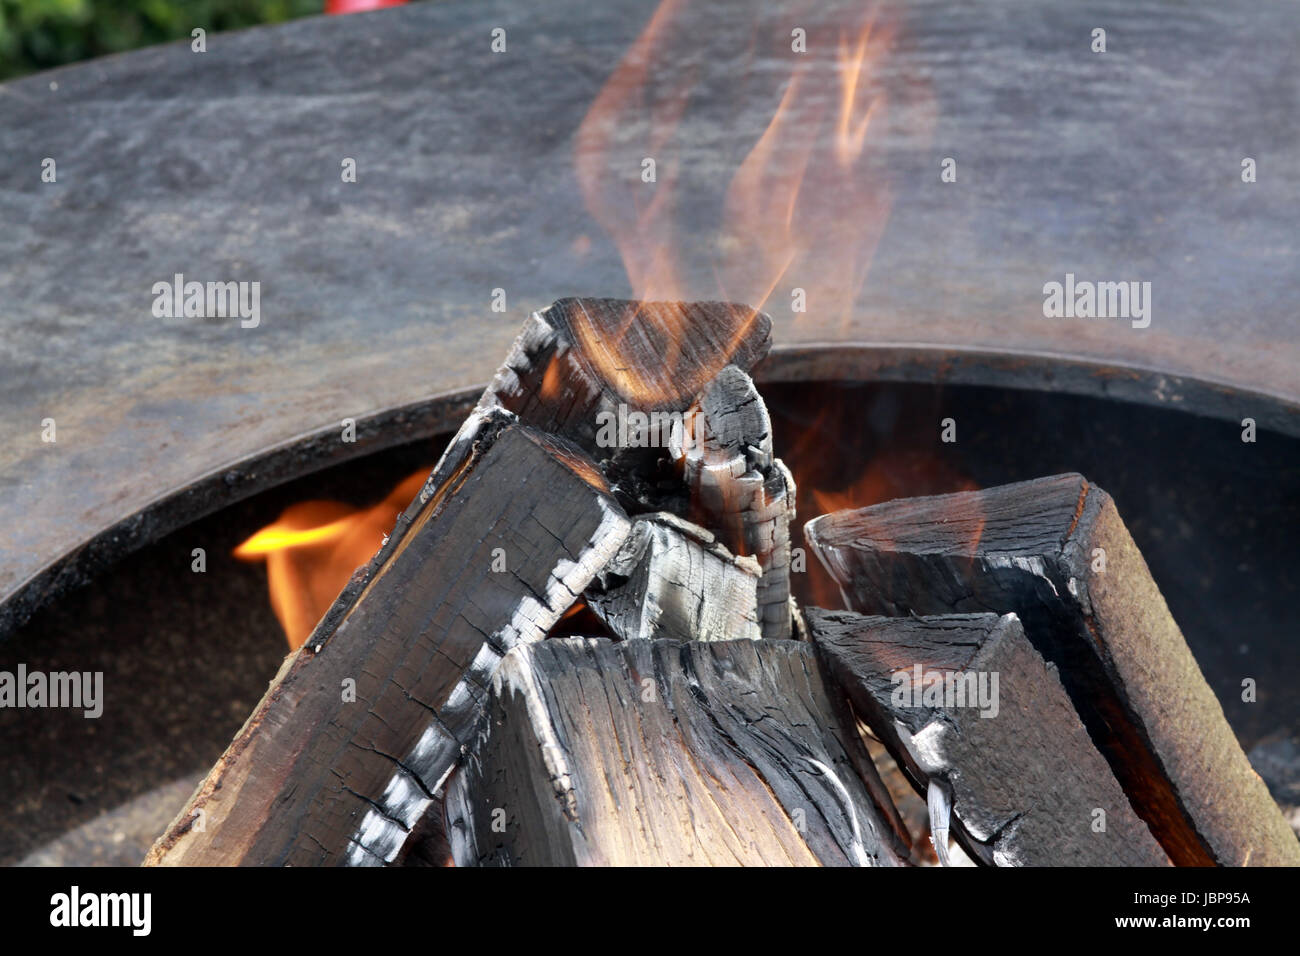 Holzscheite auf einer Feuerstelle Foto Stock